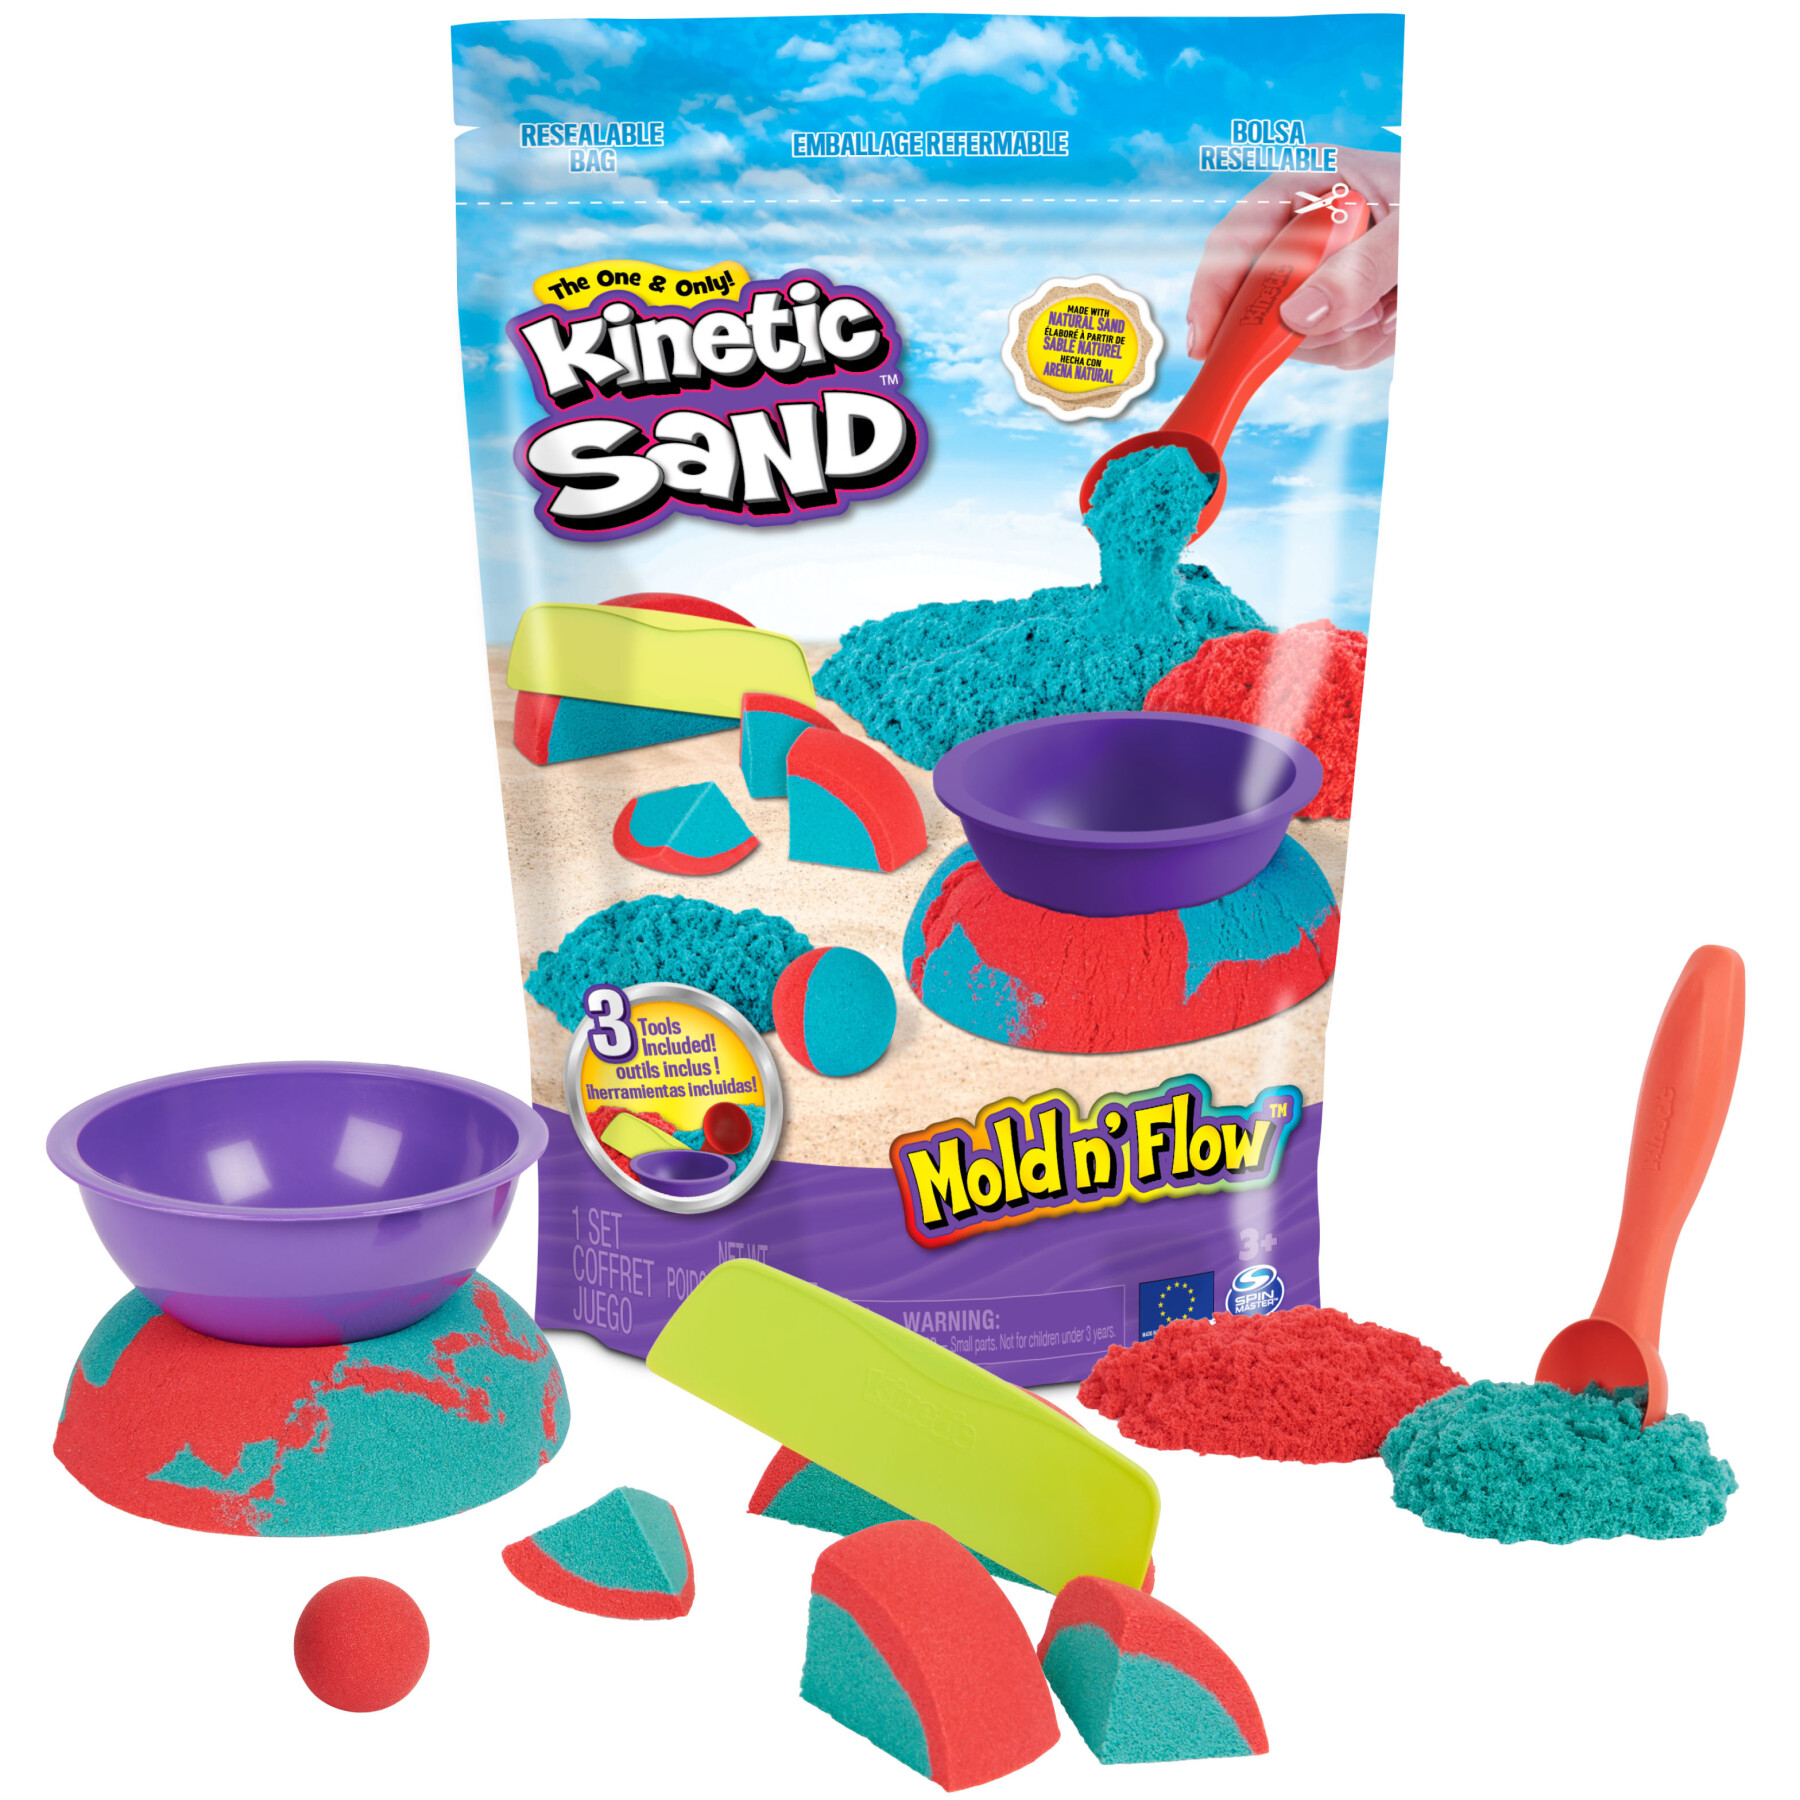 Kinetic sand, mold n’ flow, 680g di kinetic sand, sabbia in 2 colori, rossa e verde, 3 strumenti per modellare e creare, gioco per bambini e bambine, 3+ anni - KINETIC SAND